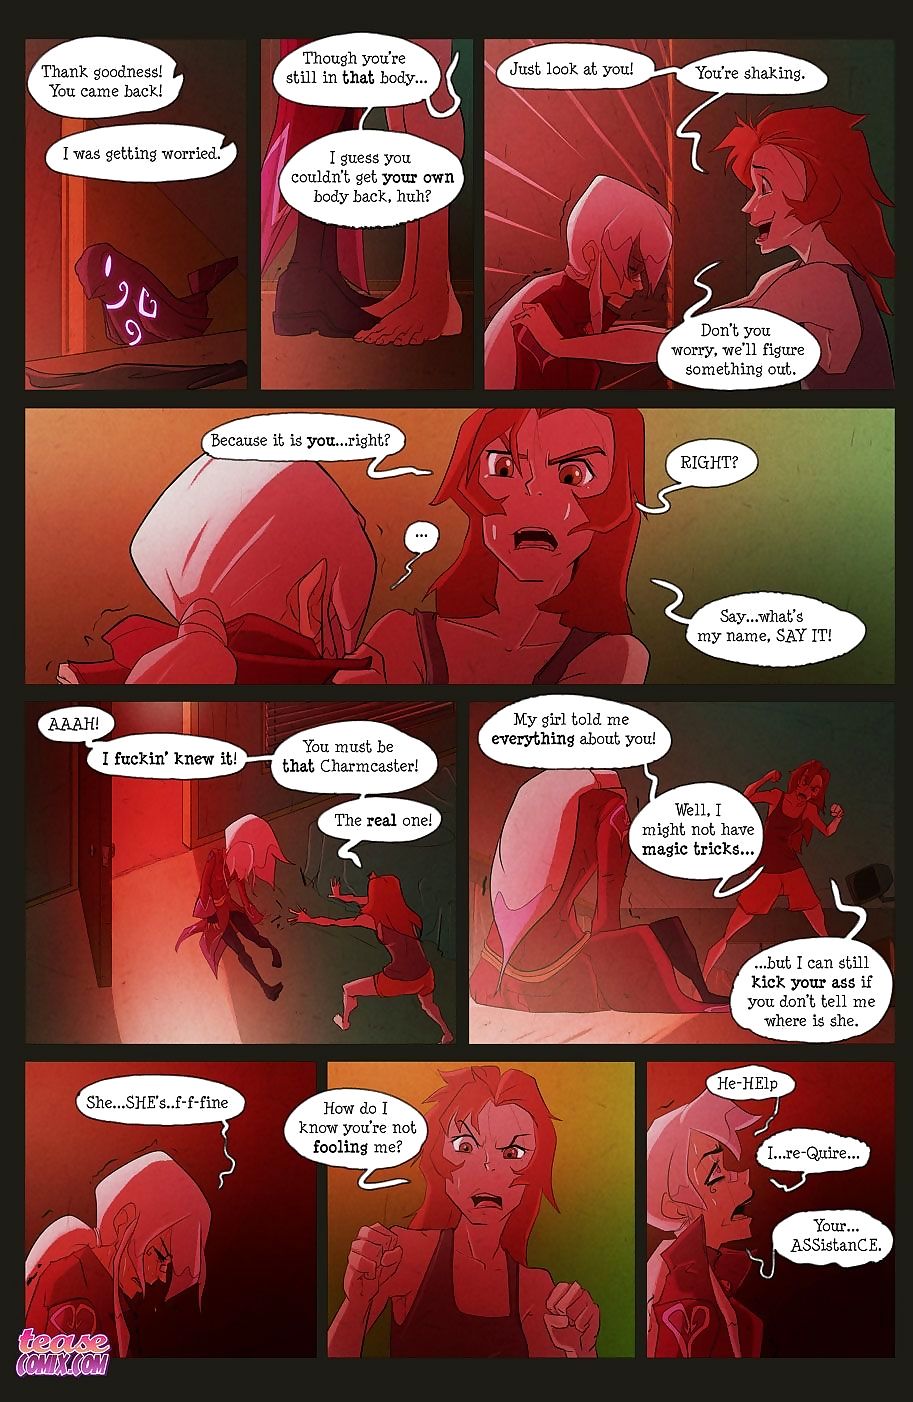 el bruja Con no nombre - Parte 2 page 1